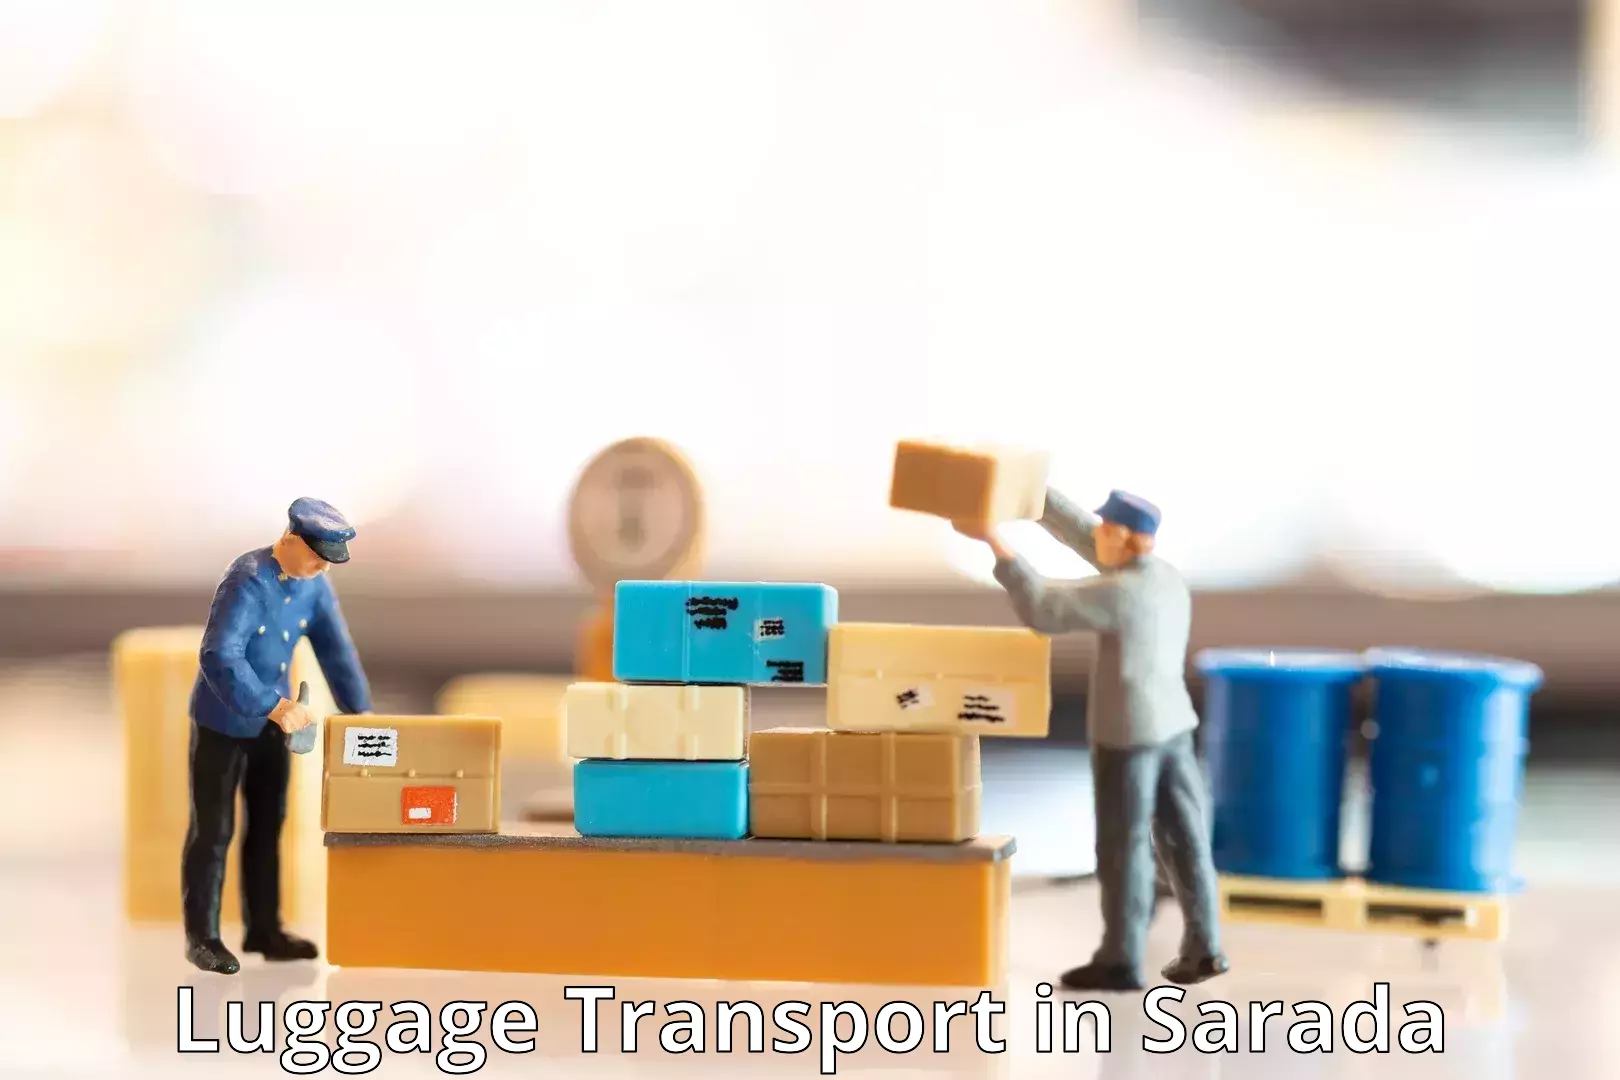 Luggage shipping discounts in Sarada